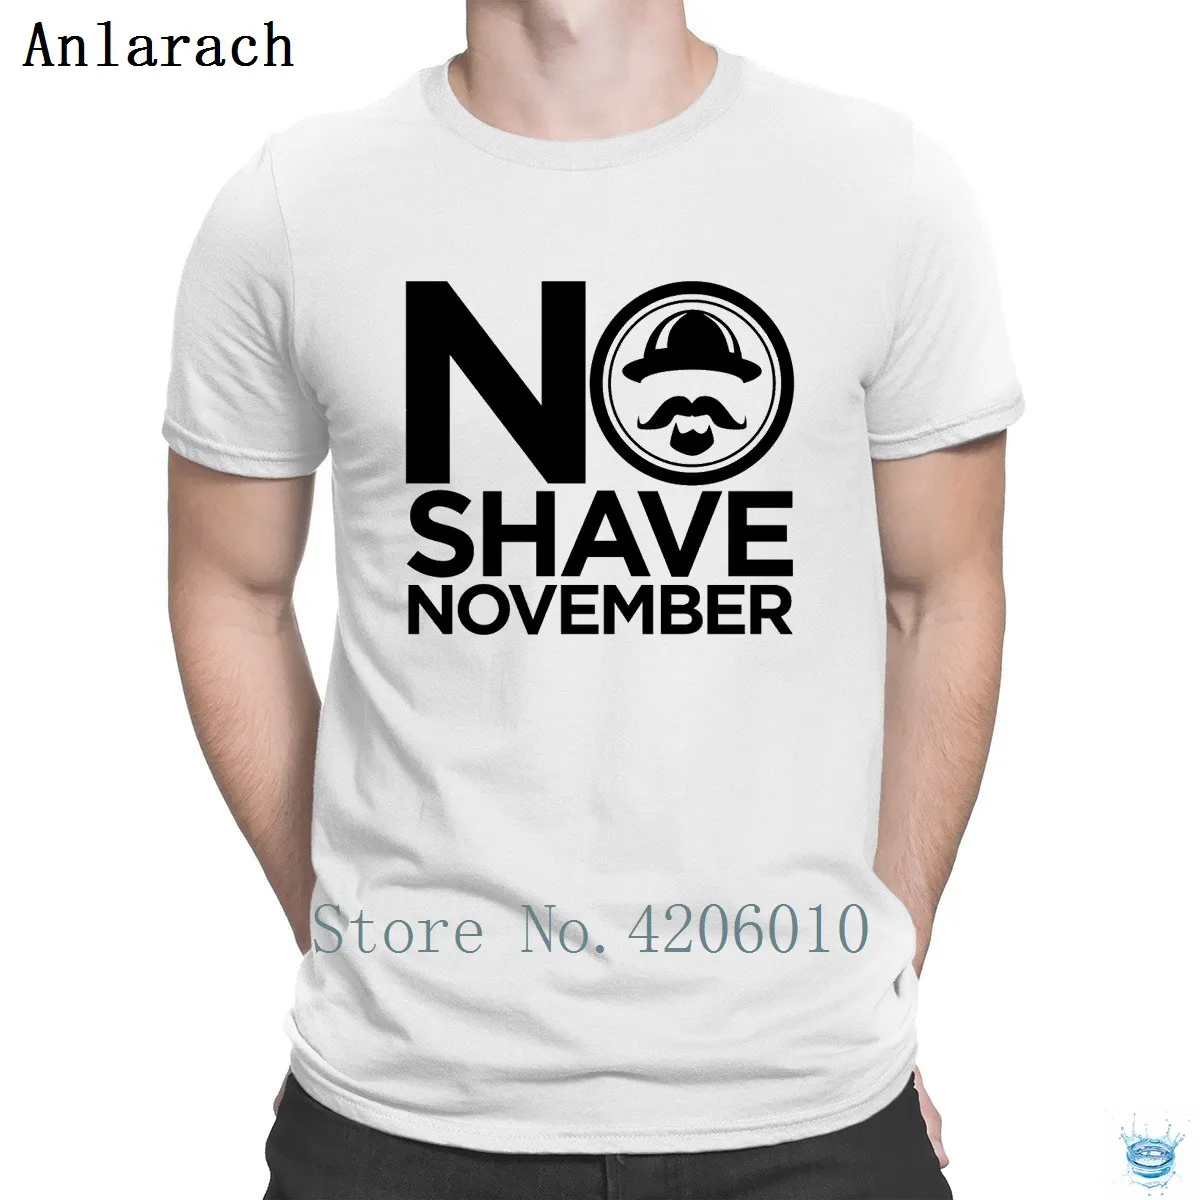 Традиционная футболка с надписью «No Shave November», фирменная графическая летняя стильная футболка для мужчин в стиле хип-хоп, хлопок, стильный дизайн